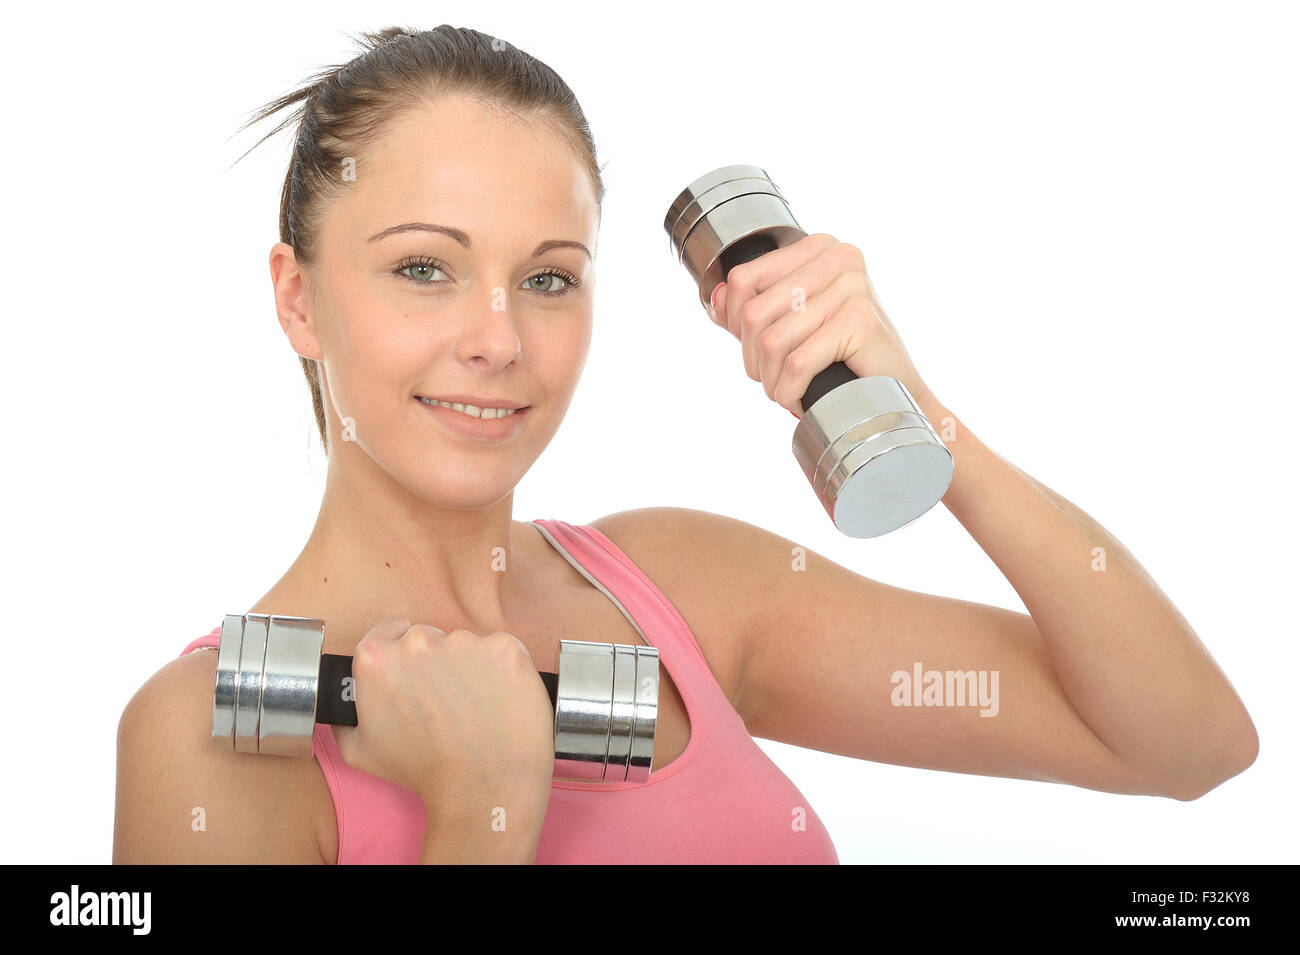 Sportliche junge Frau Ausbildung oder zur Verbesserung Ihrer Fitness arbeiten mit Hantel Gewichte Isoliert gegen einen weißen Hintergrund Stockfoto